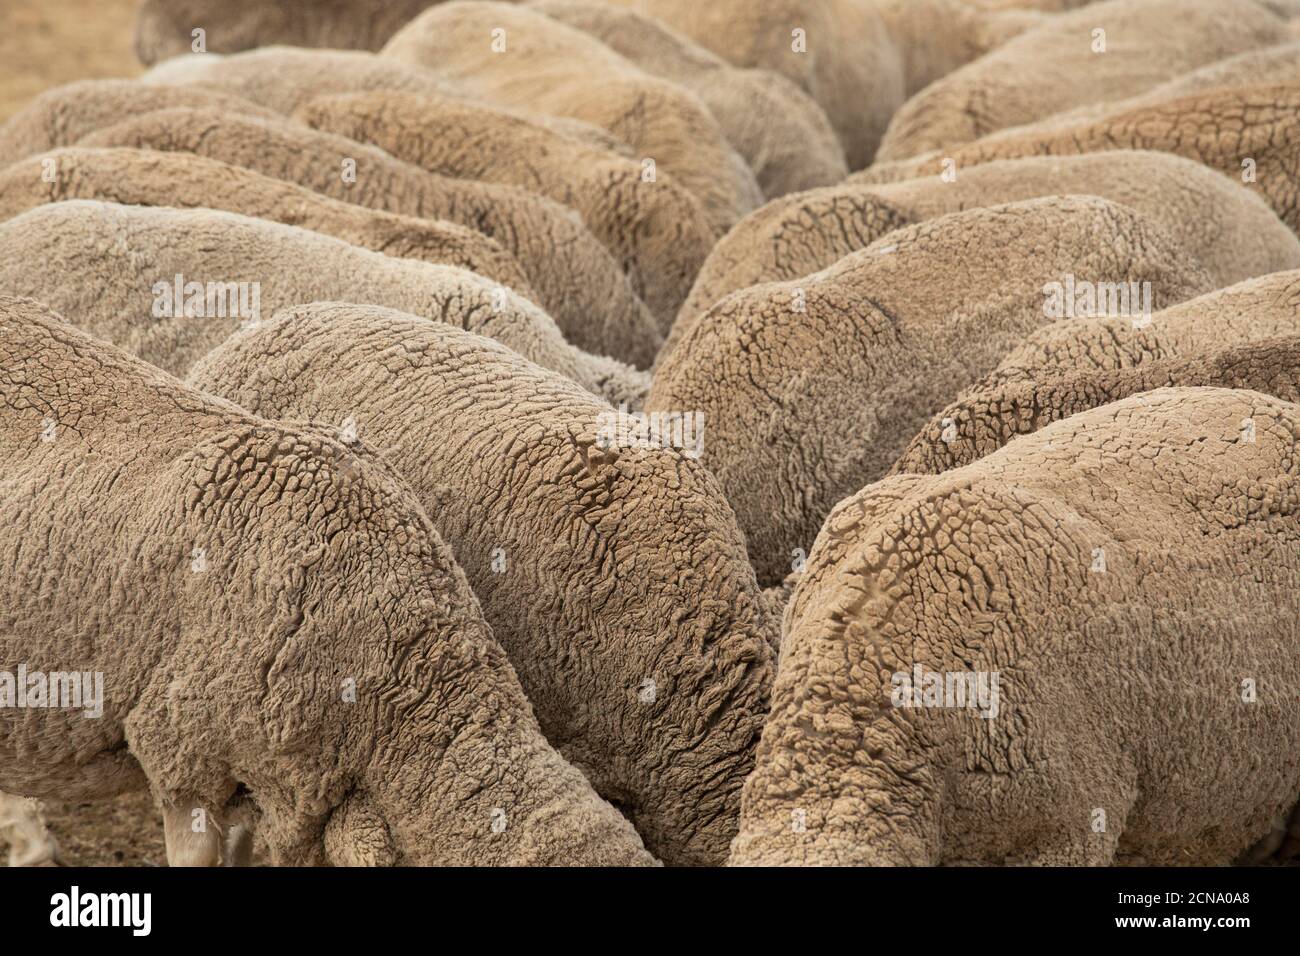 Merino sheep Stock Photo